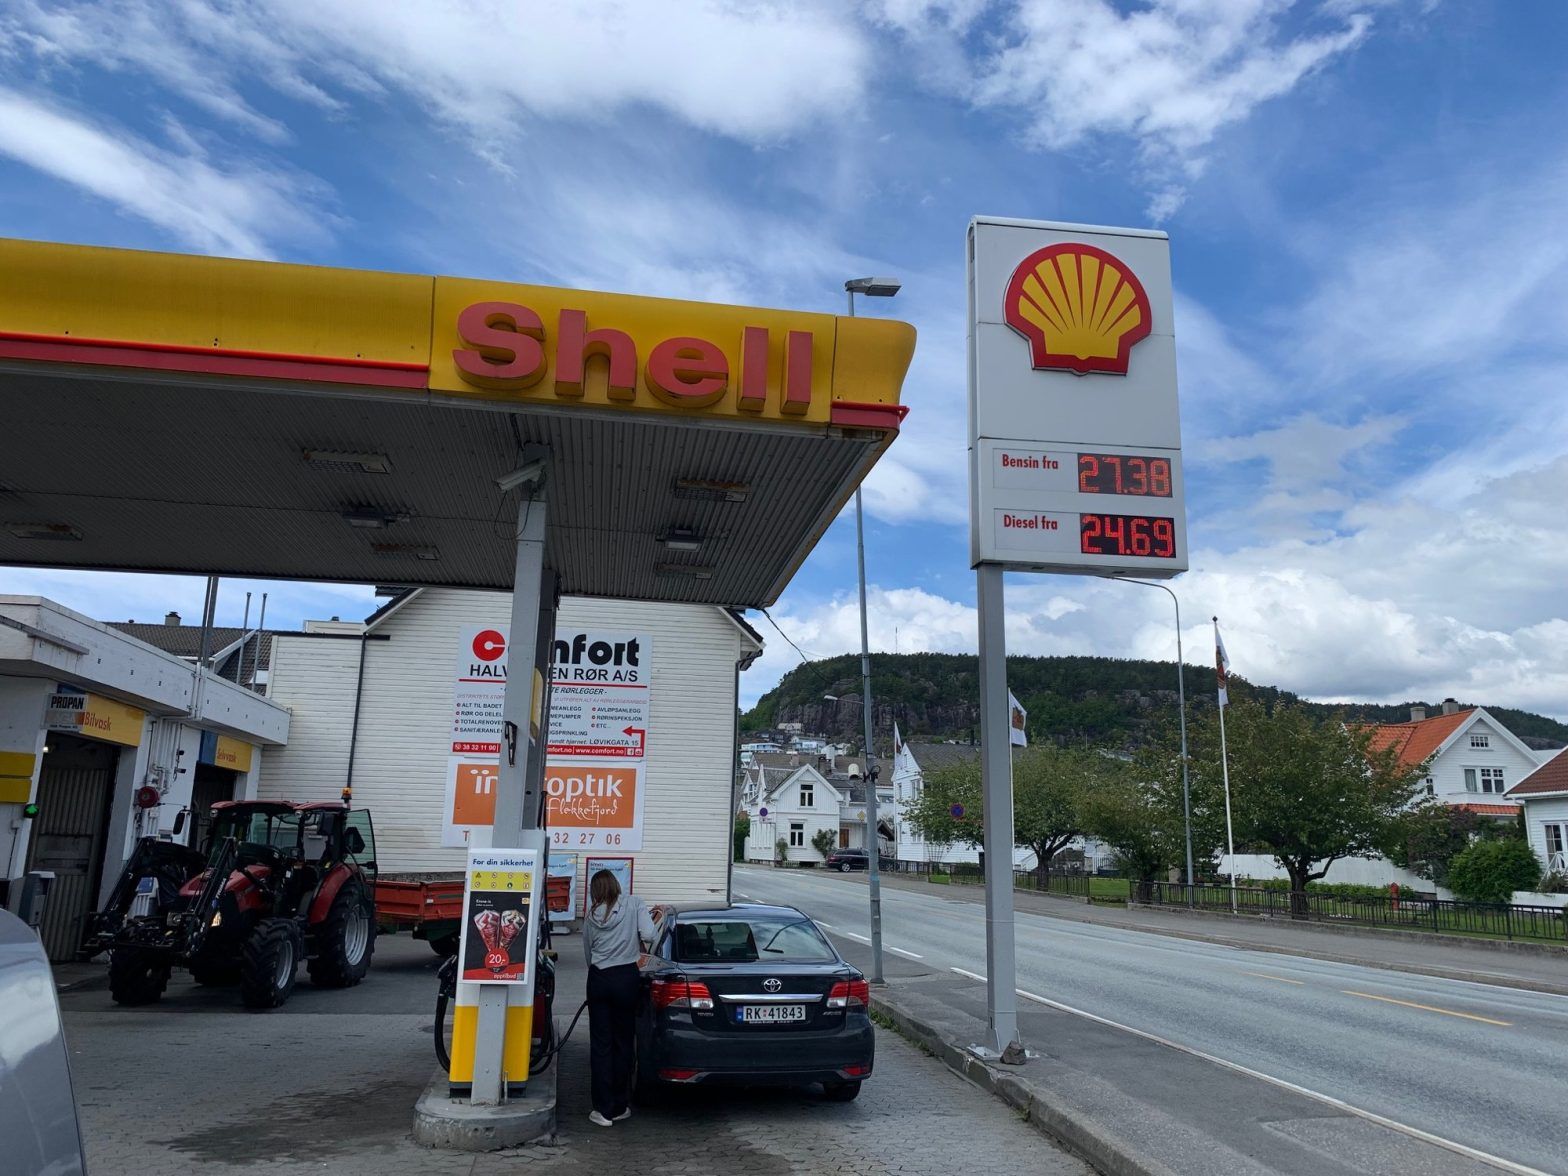 Près de 3,50 le litre d’essence en Norvège